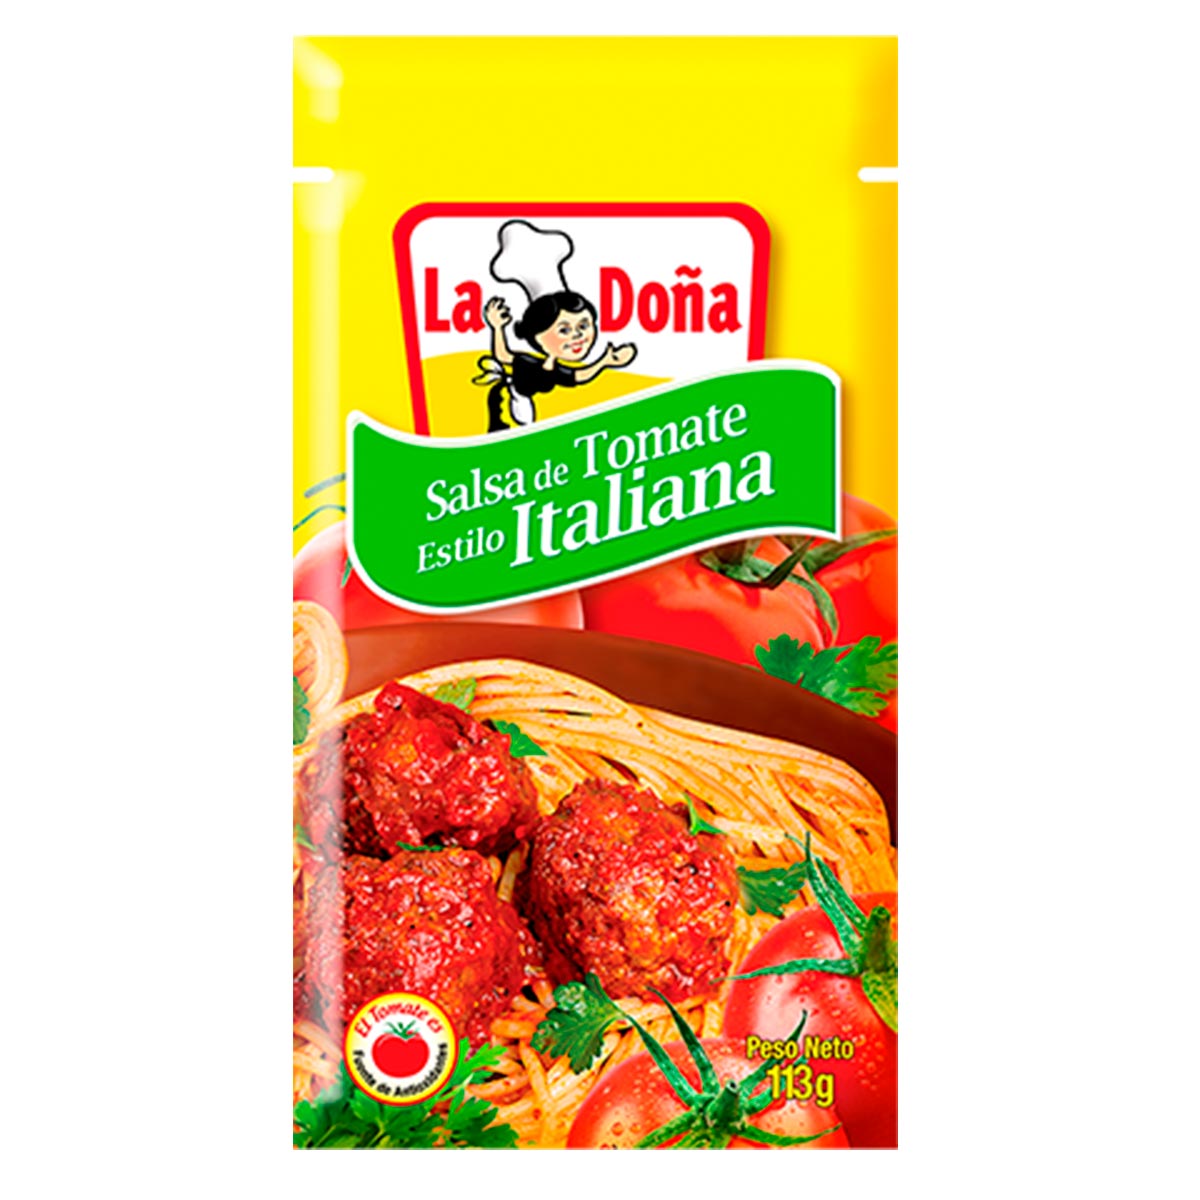 Salsa de Tomate Estilo Italiana La Doña 113g